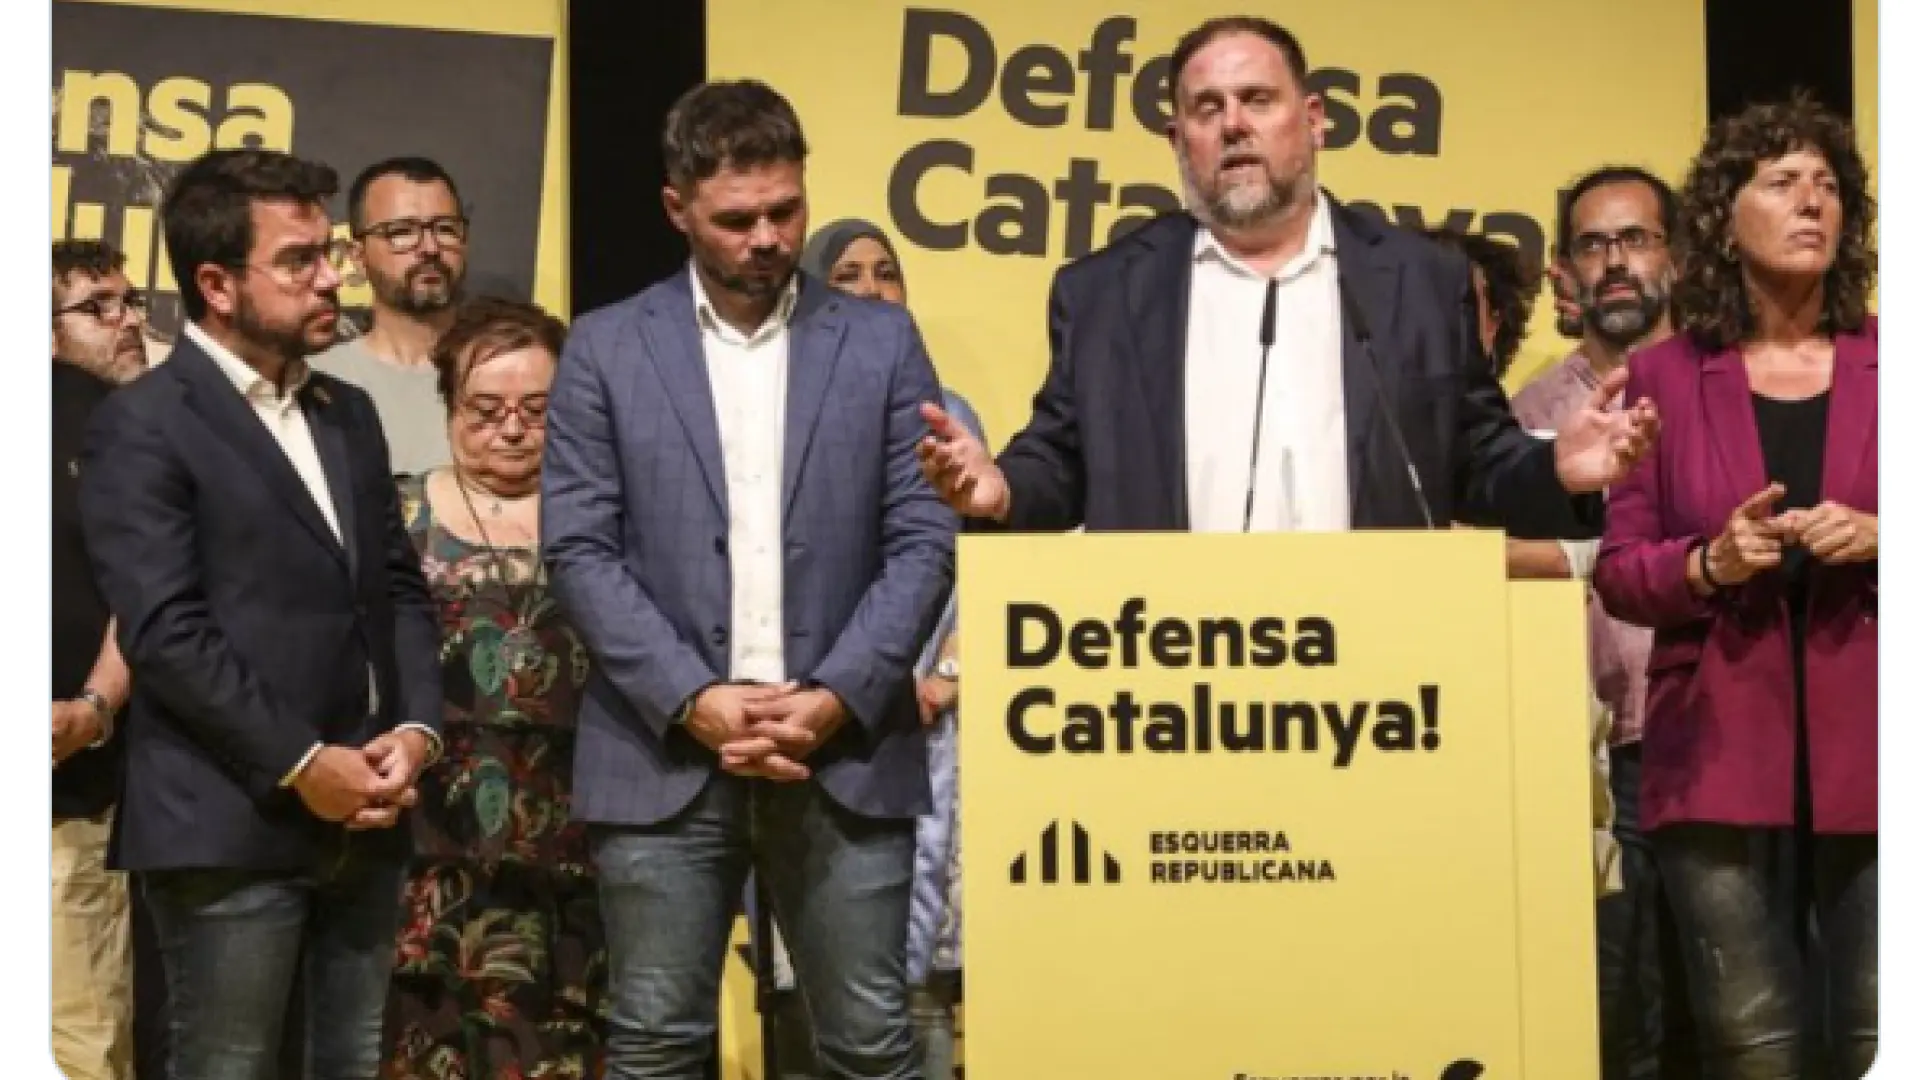 Luis Figo se mofa de Gabriel Rufián tras las elecciones catalanas: "Se te ve cabizbajo, será que estás cansado de tanto trabajo"